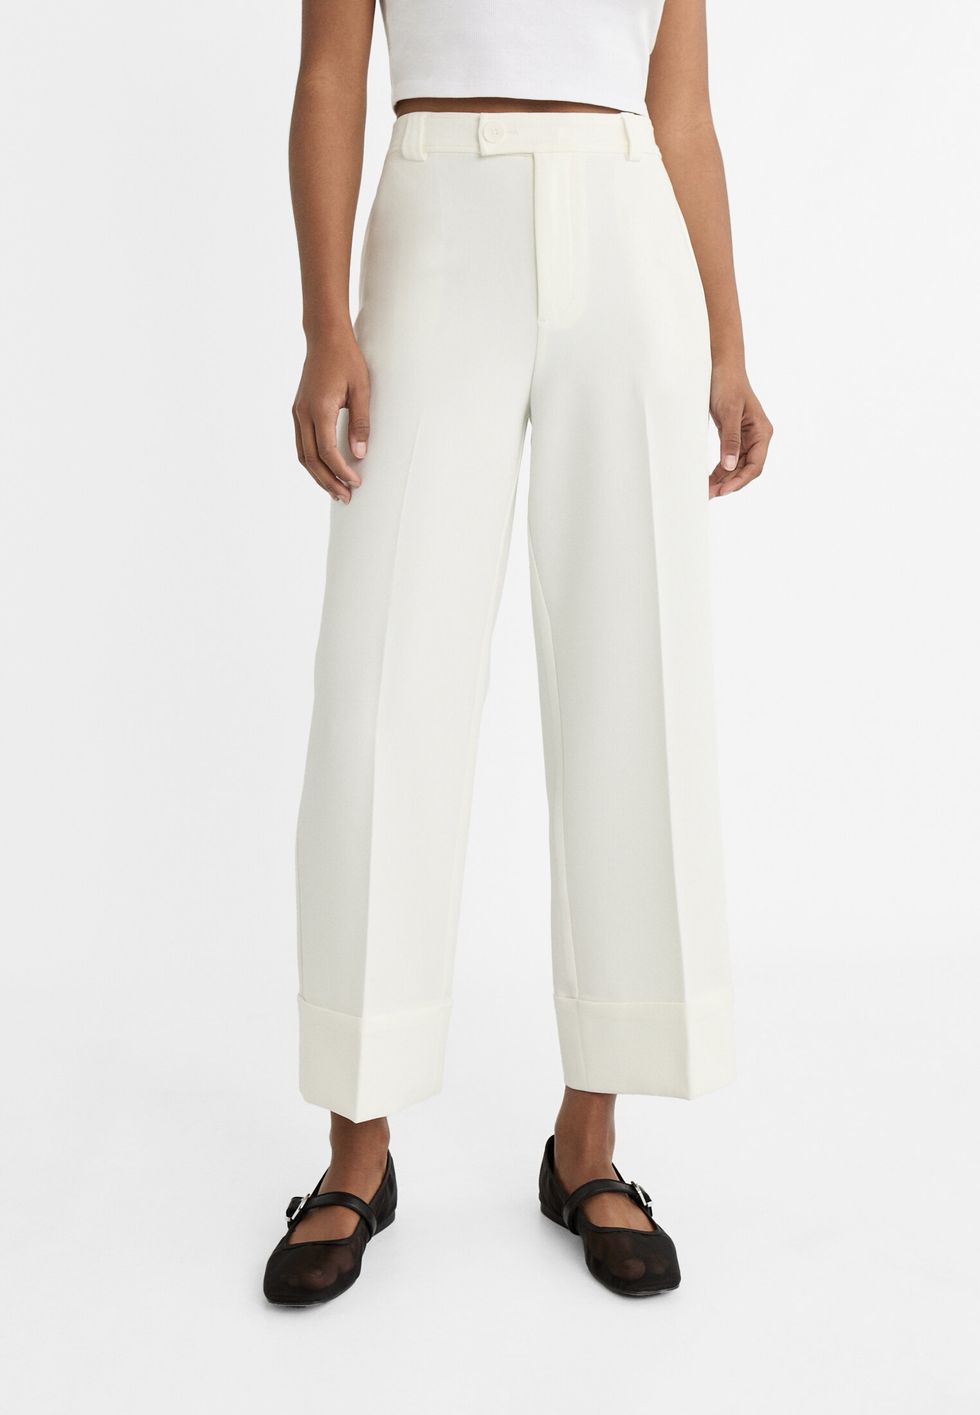 pantalones blancos de stradivarius